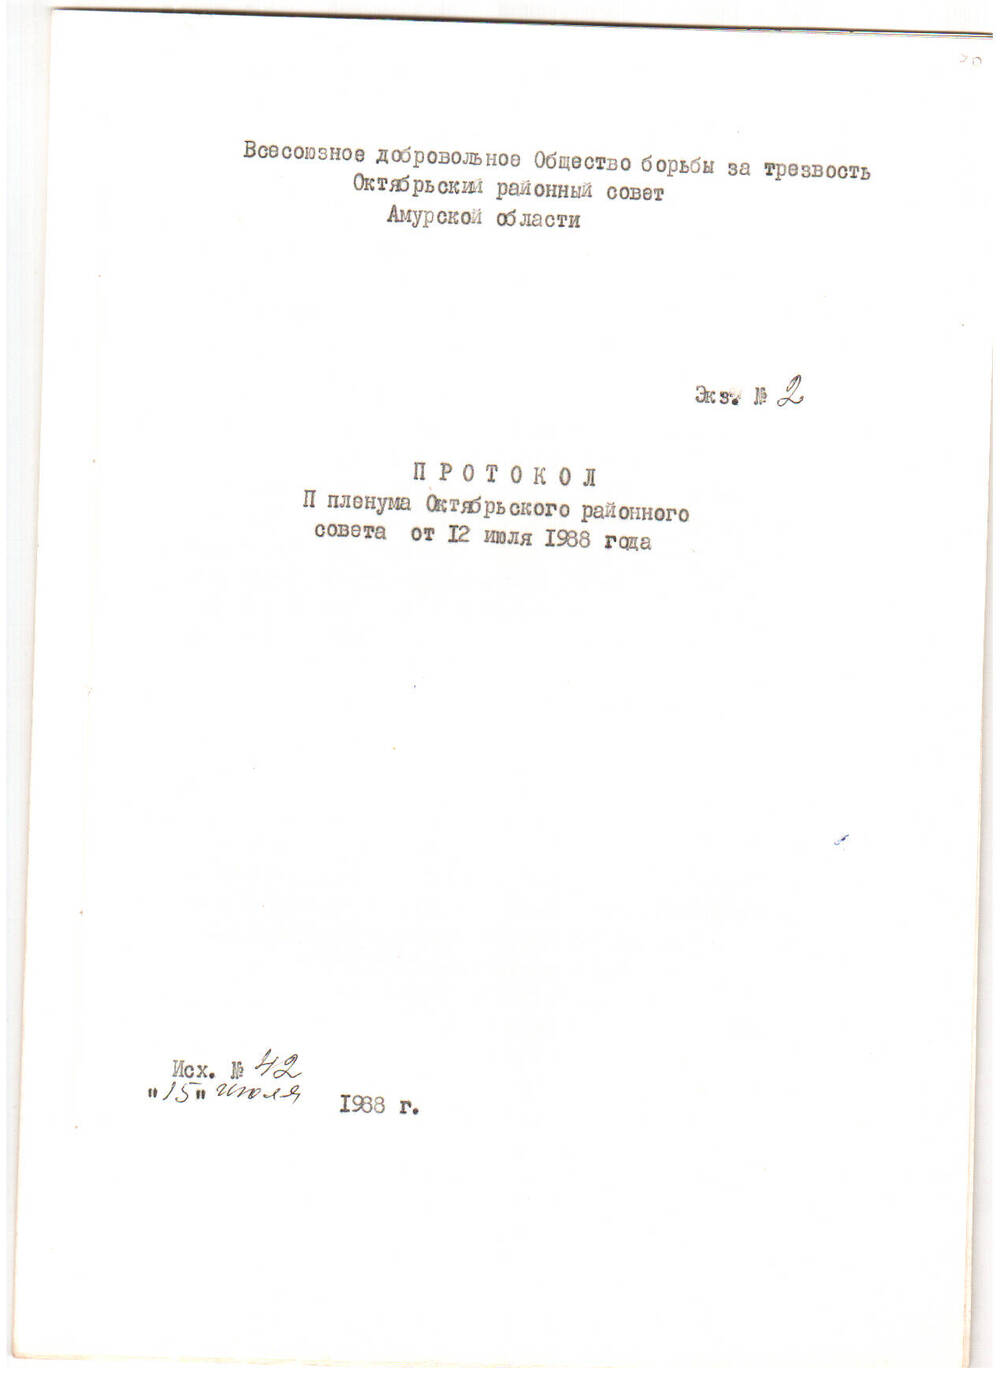 Протокол II пленума Октябрьского районного совета от 12 июля 1988 г.